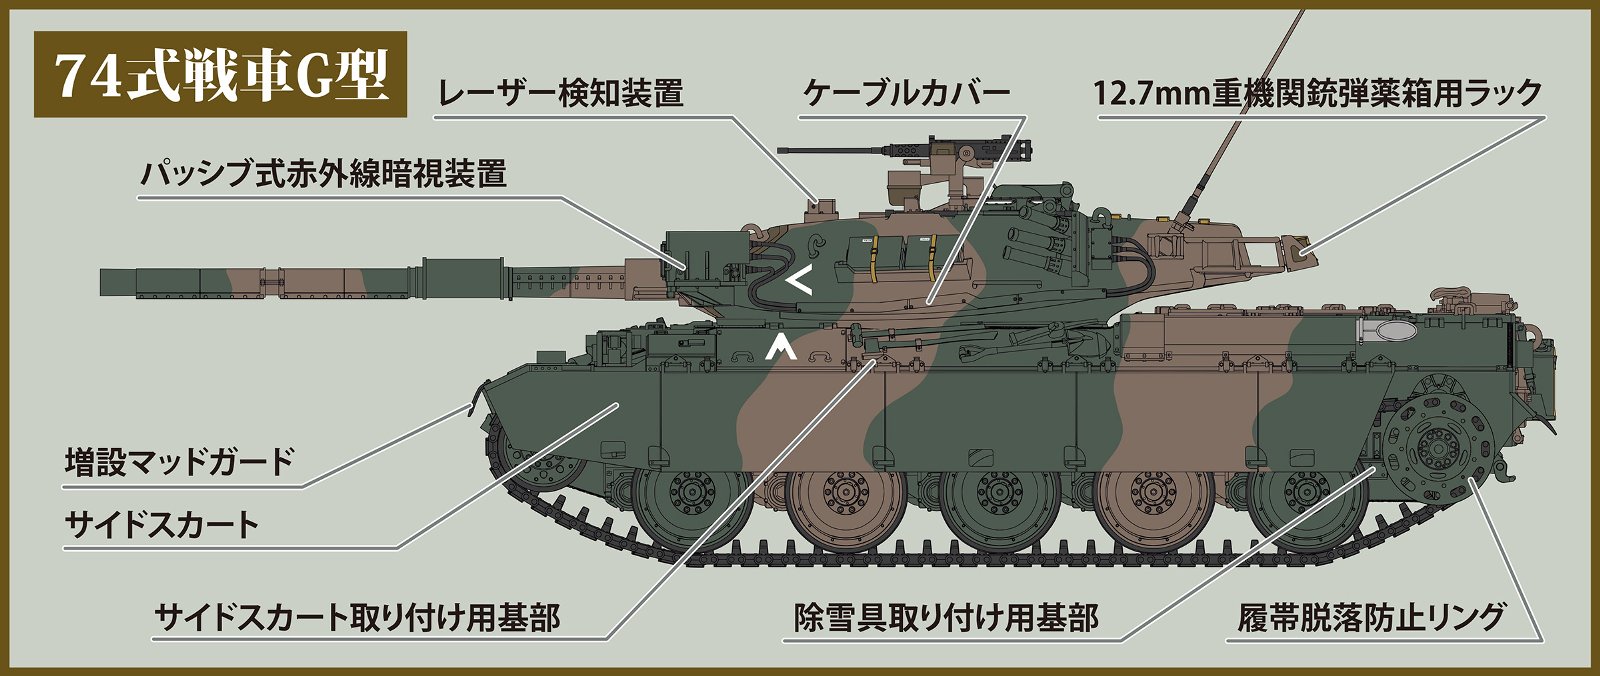 1/35陸上自衛隊74式戦車 G型